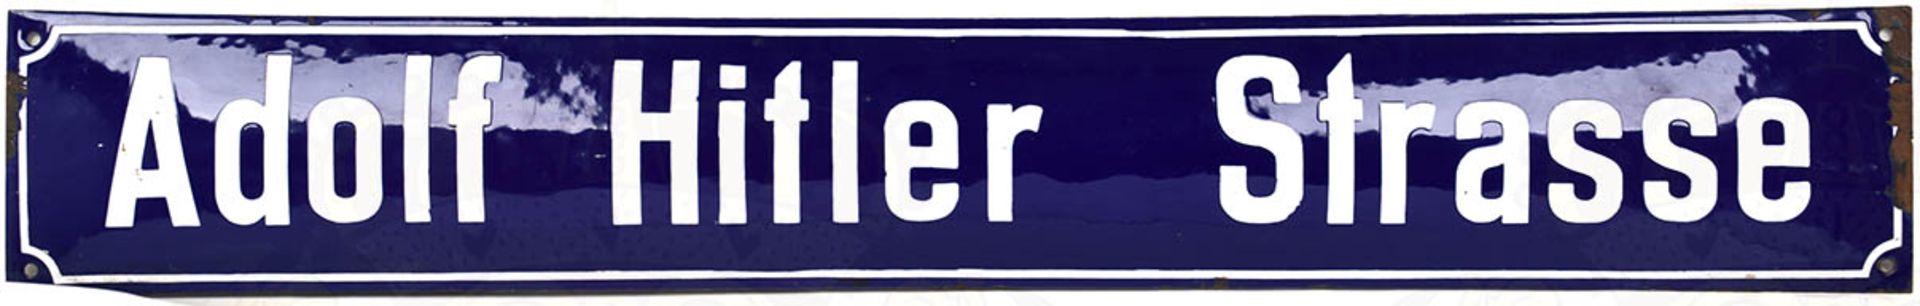 STRAßENSCHILD "ADOLF HITLER STRASSE", Eisenblech, weiß/blau emaill., Rand mit 2 Emaille-Schäden (5x1